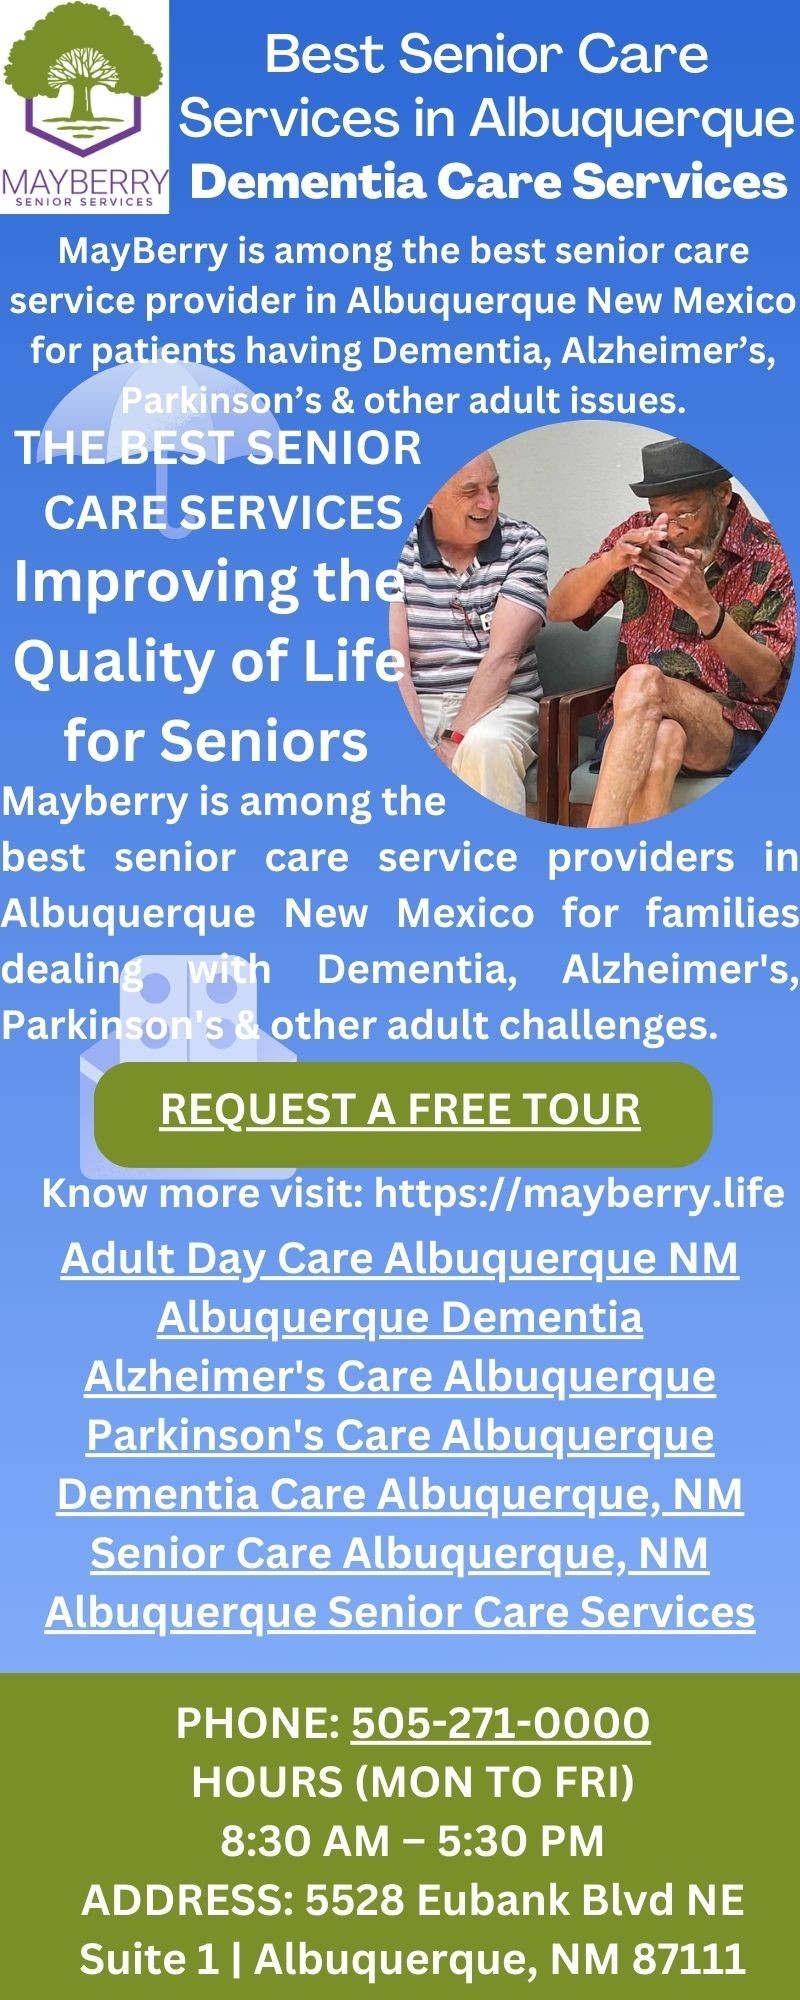 Best Senior Care Services in Albuquerque, Dementia Care Services